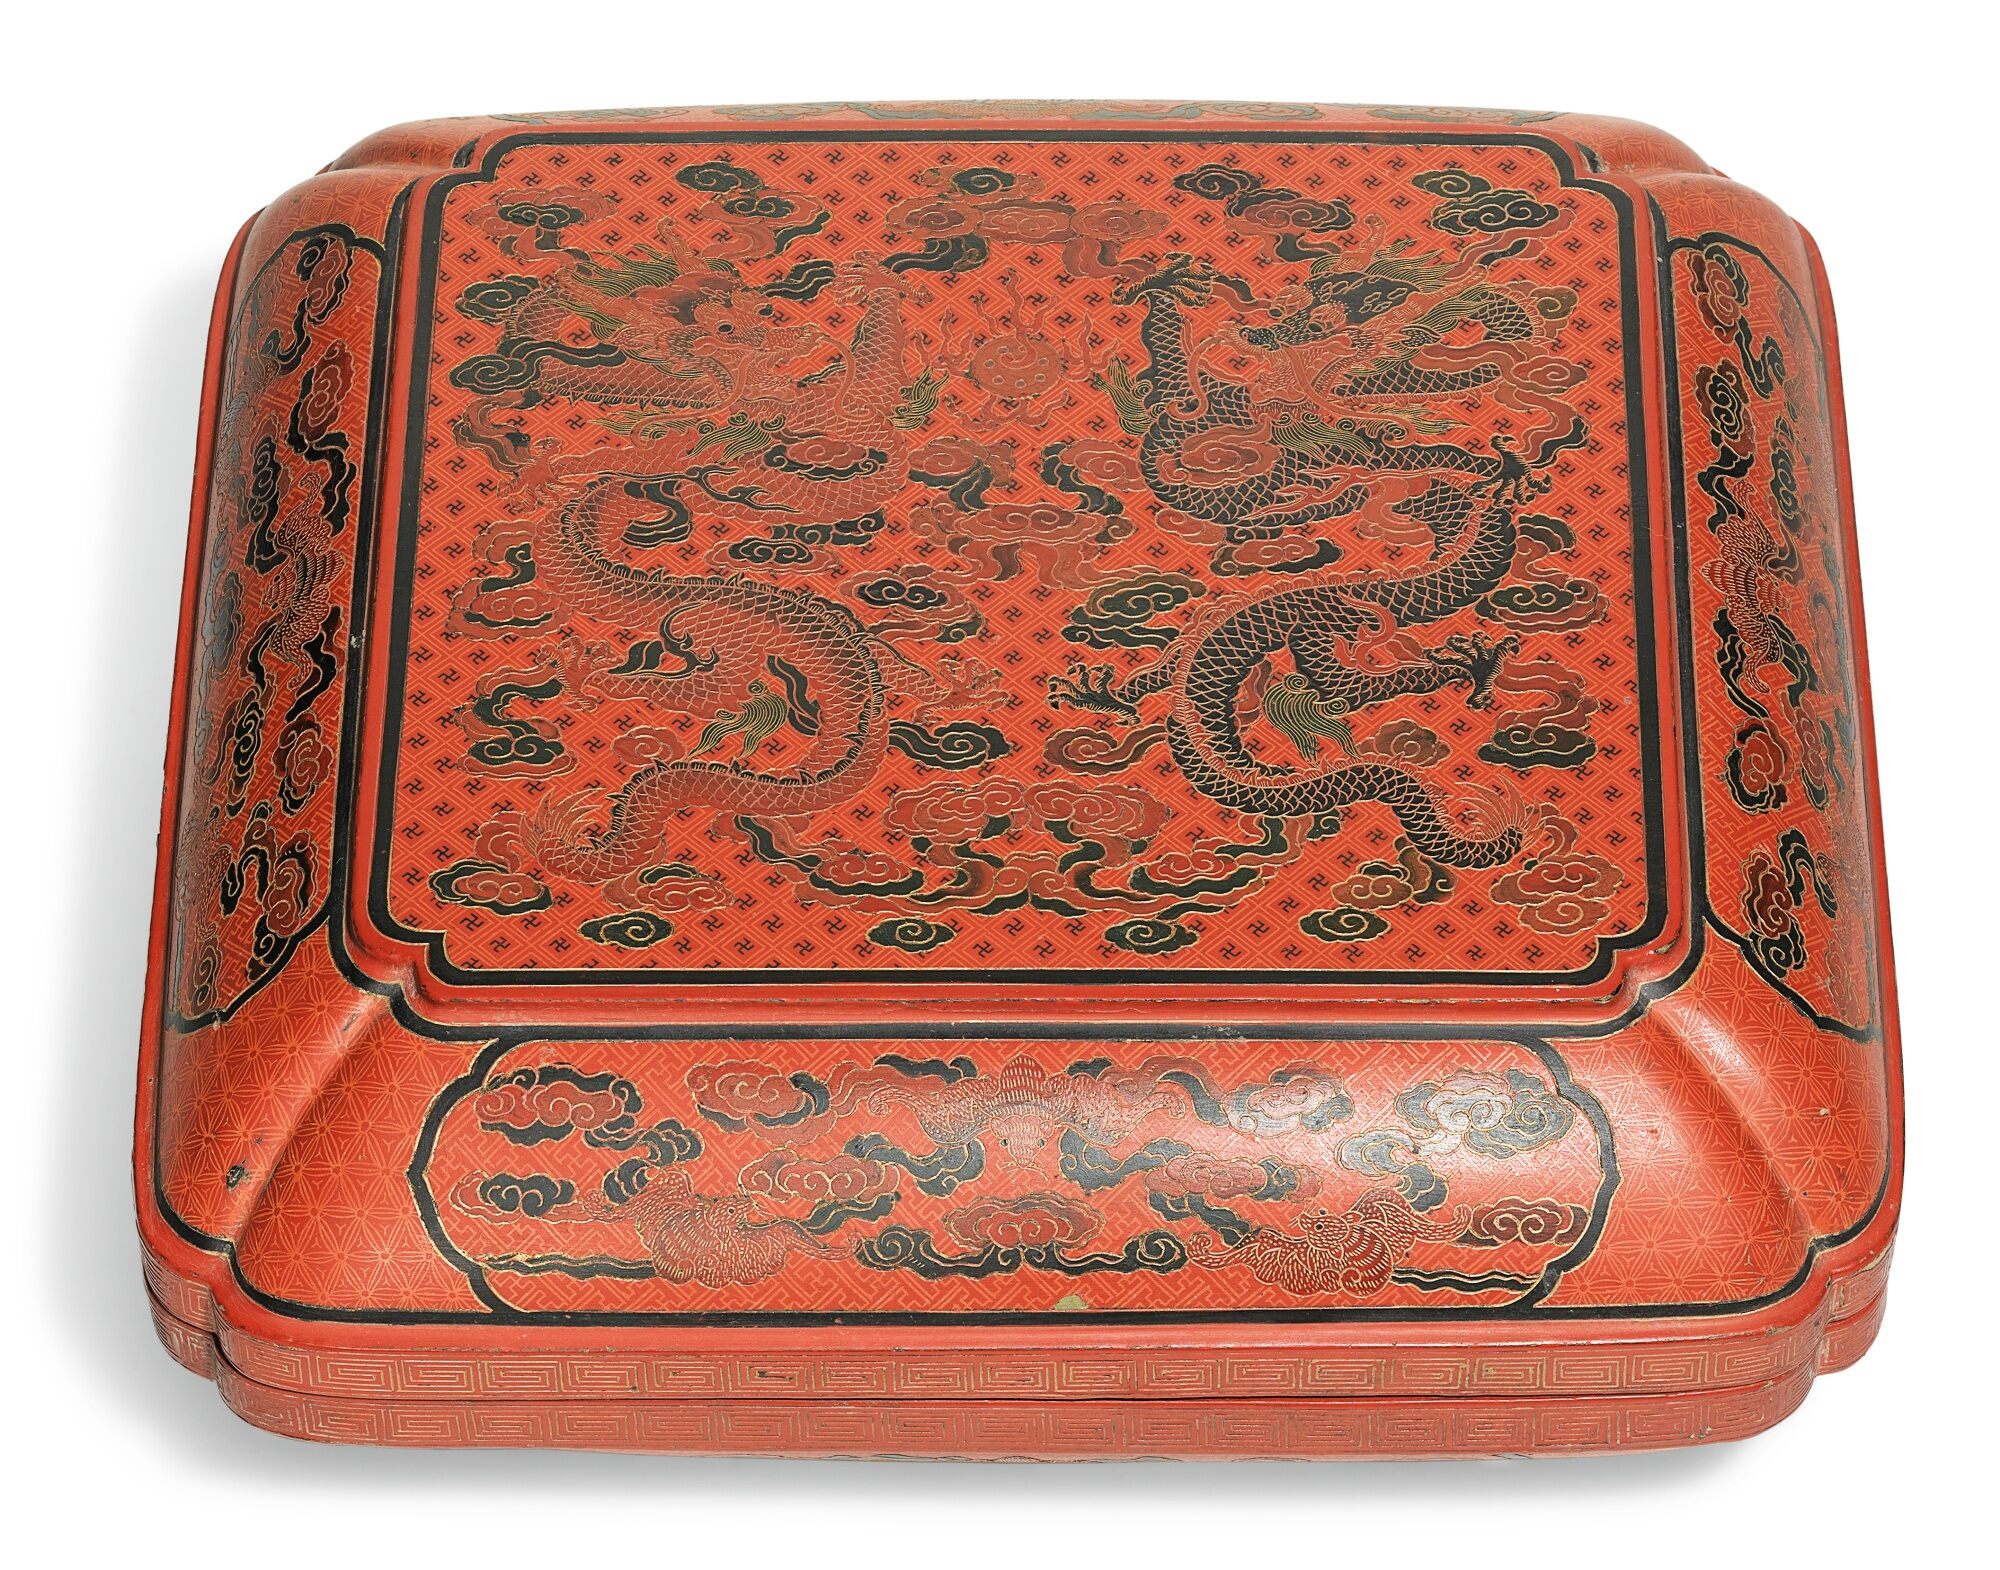 清十八世紀 戧金填漆雲龍戯珠紋倭角方蓋盒